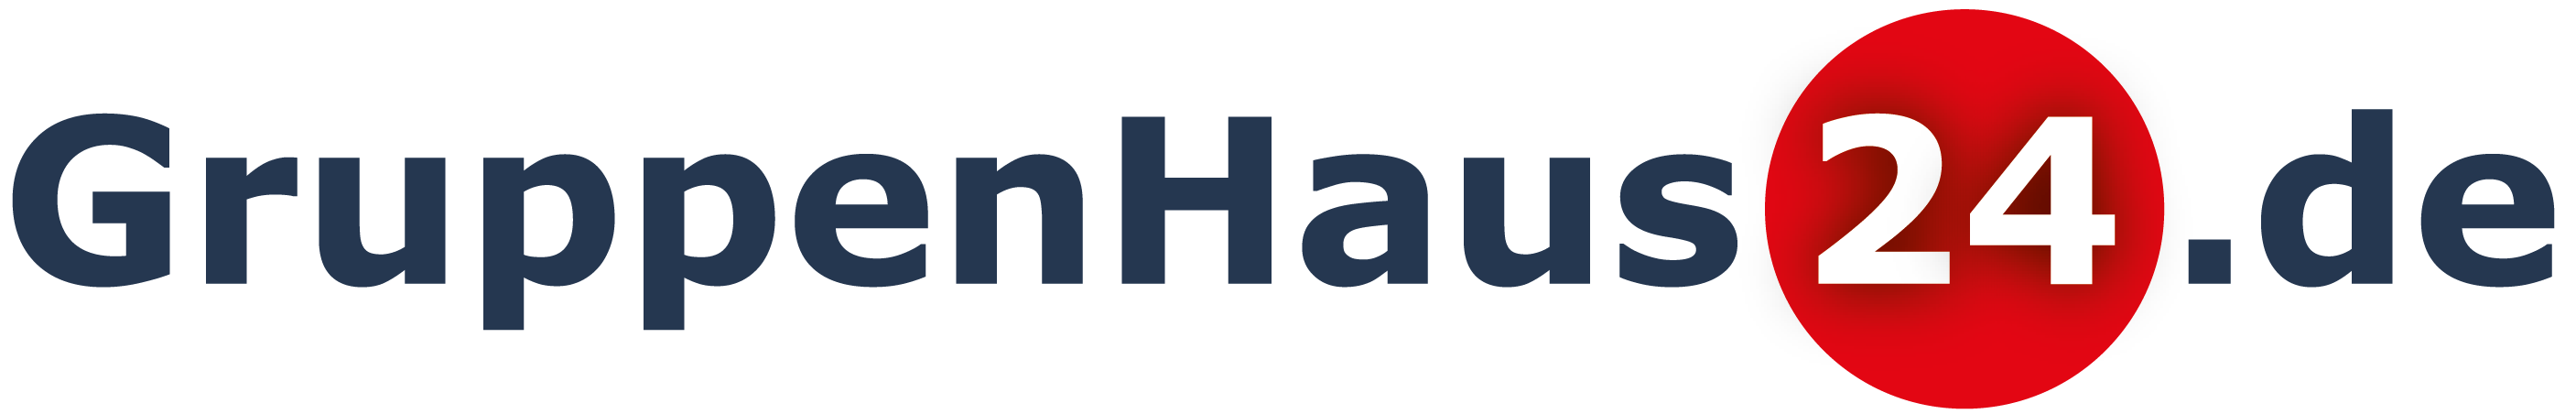 Gruppenhaus24 Logo